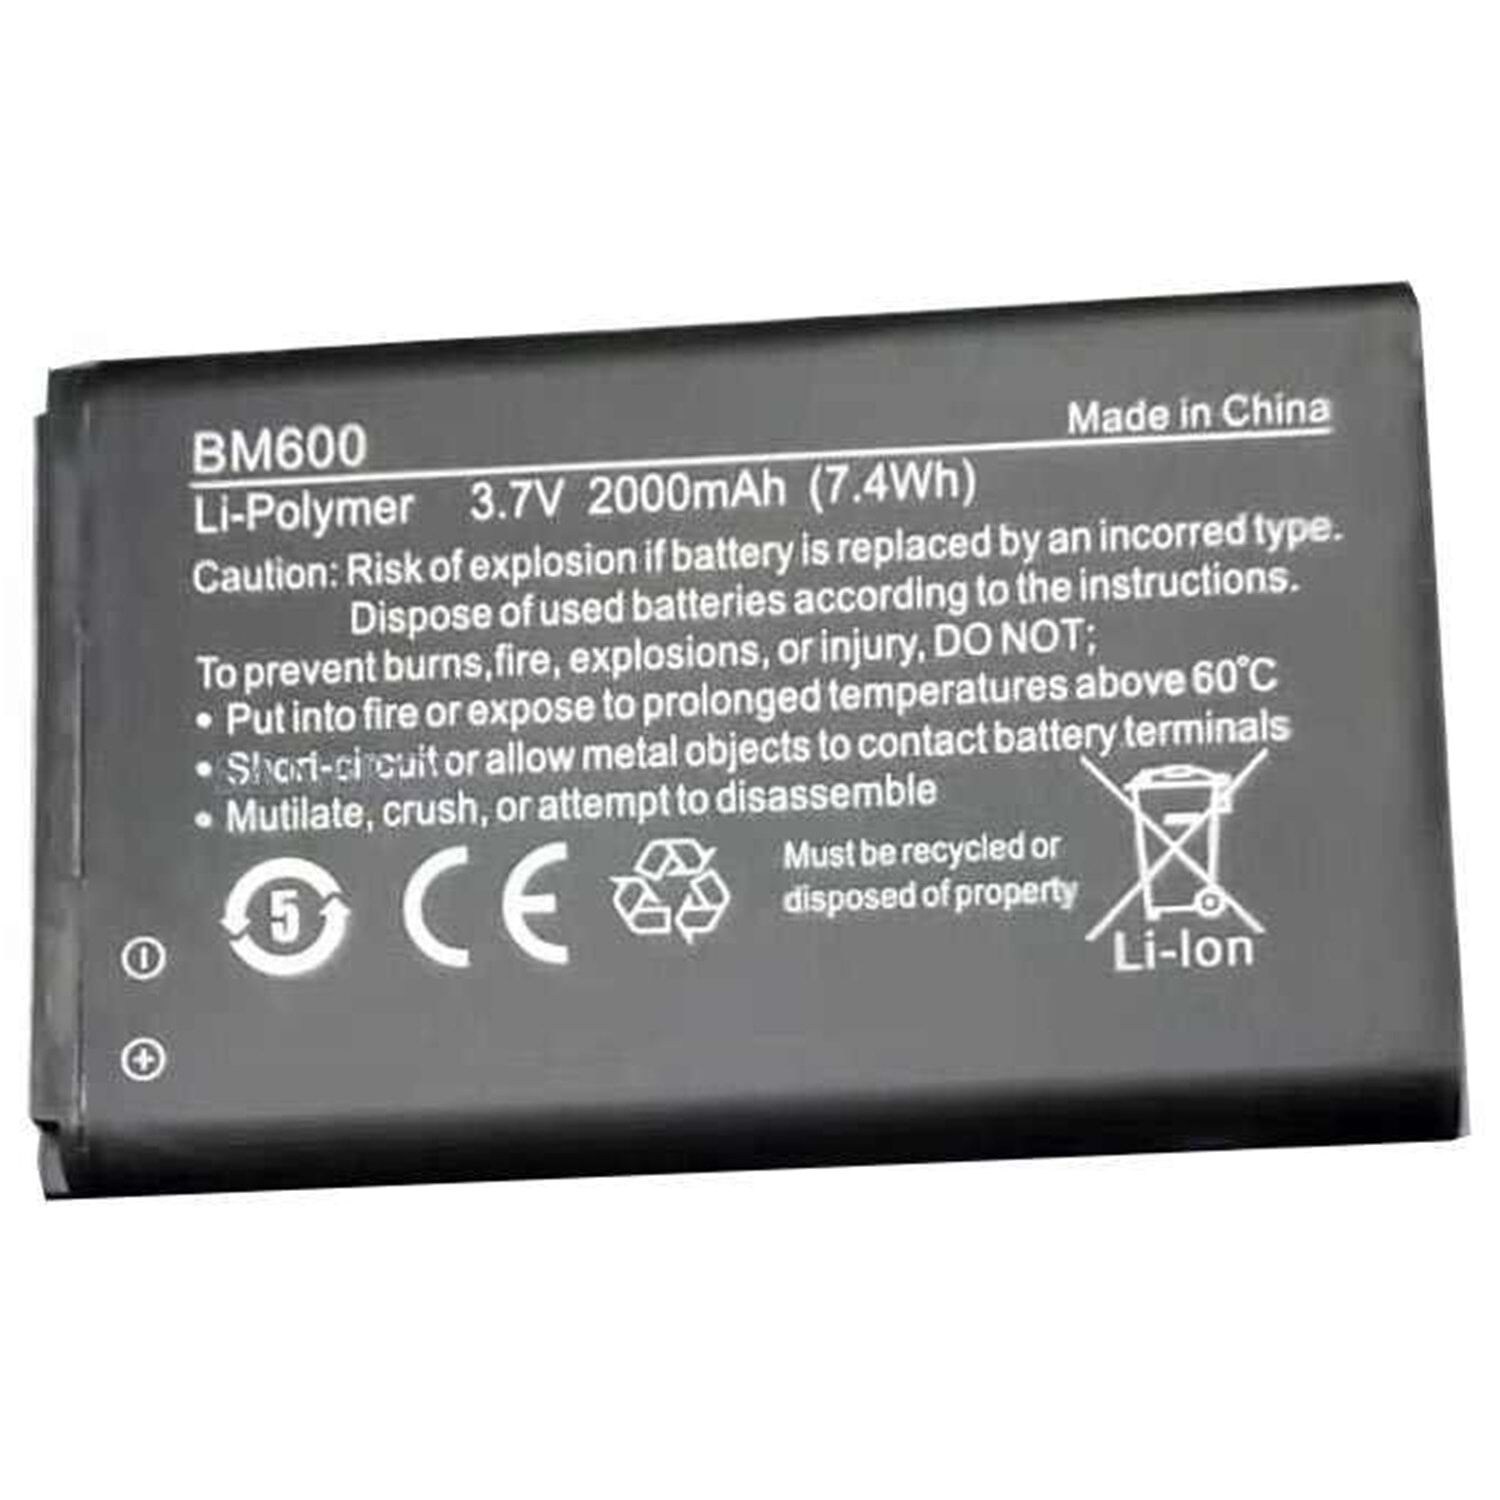 BM600 Li-Polymer 3.7v 2000mAh (7.4Wh) Batarya